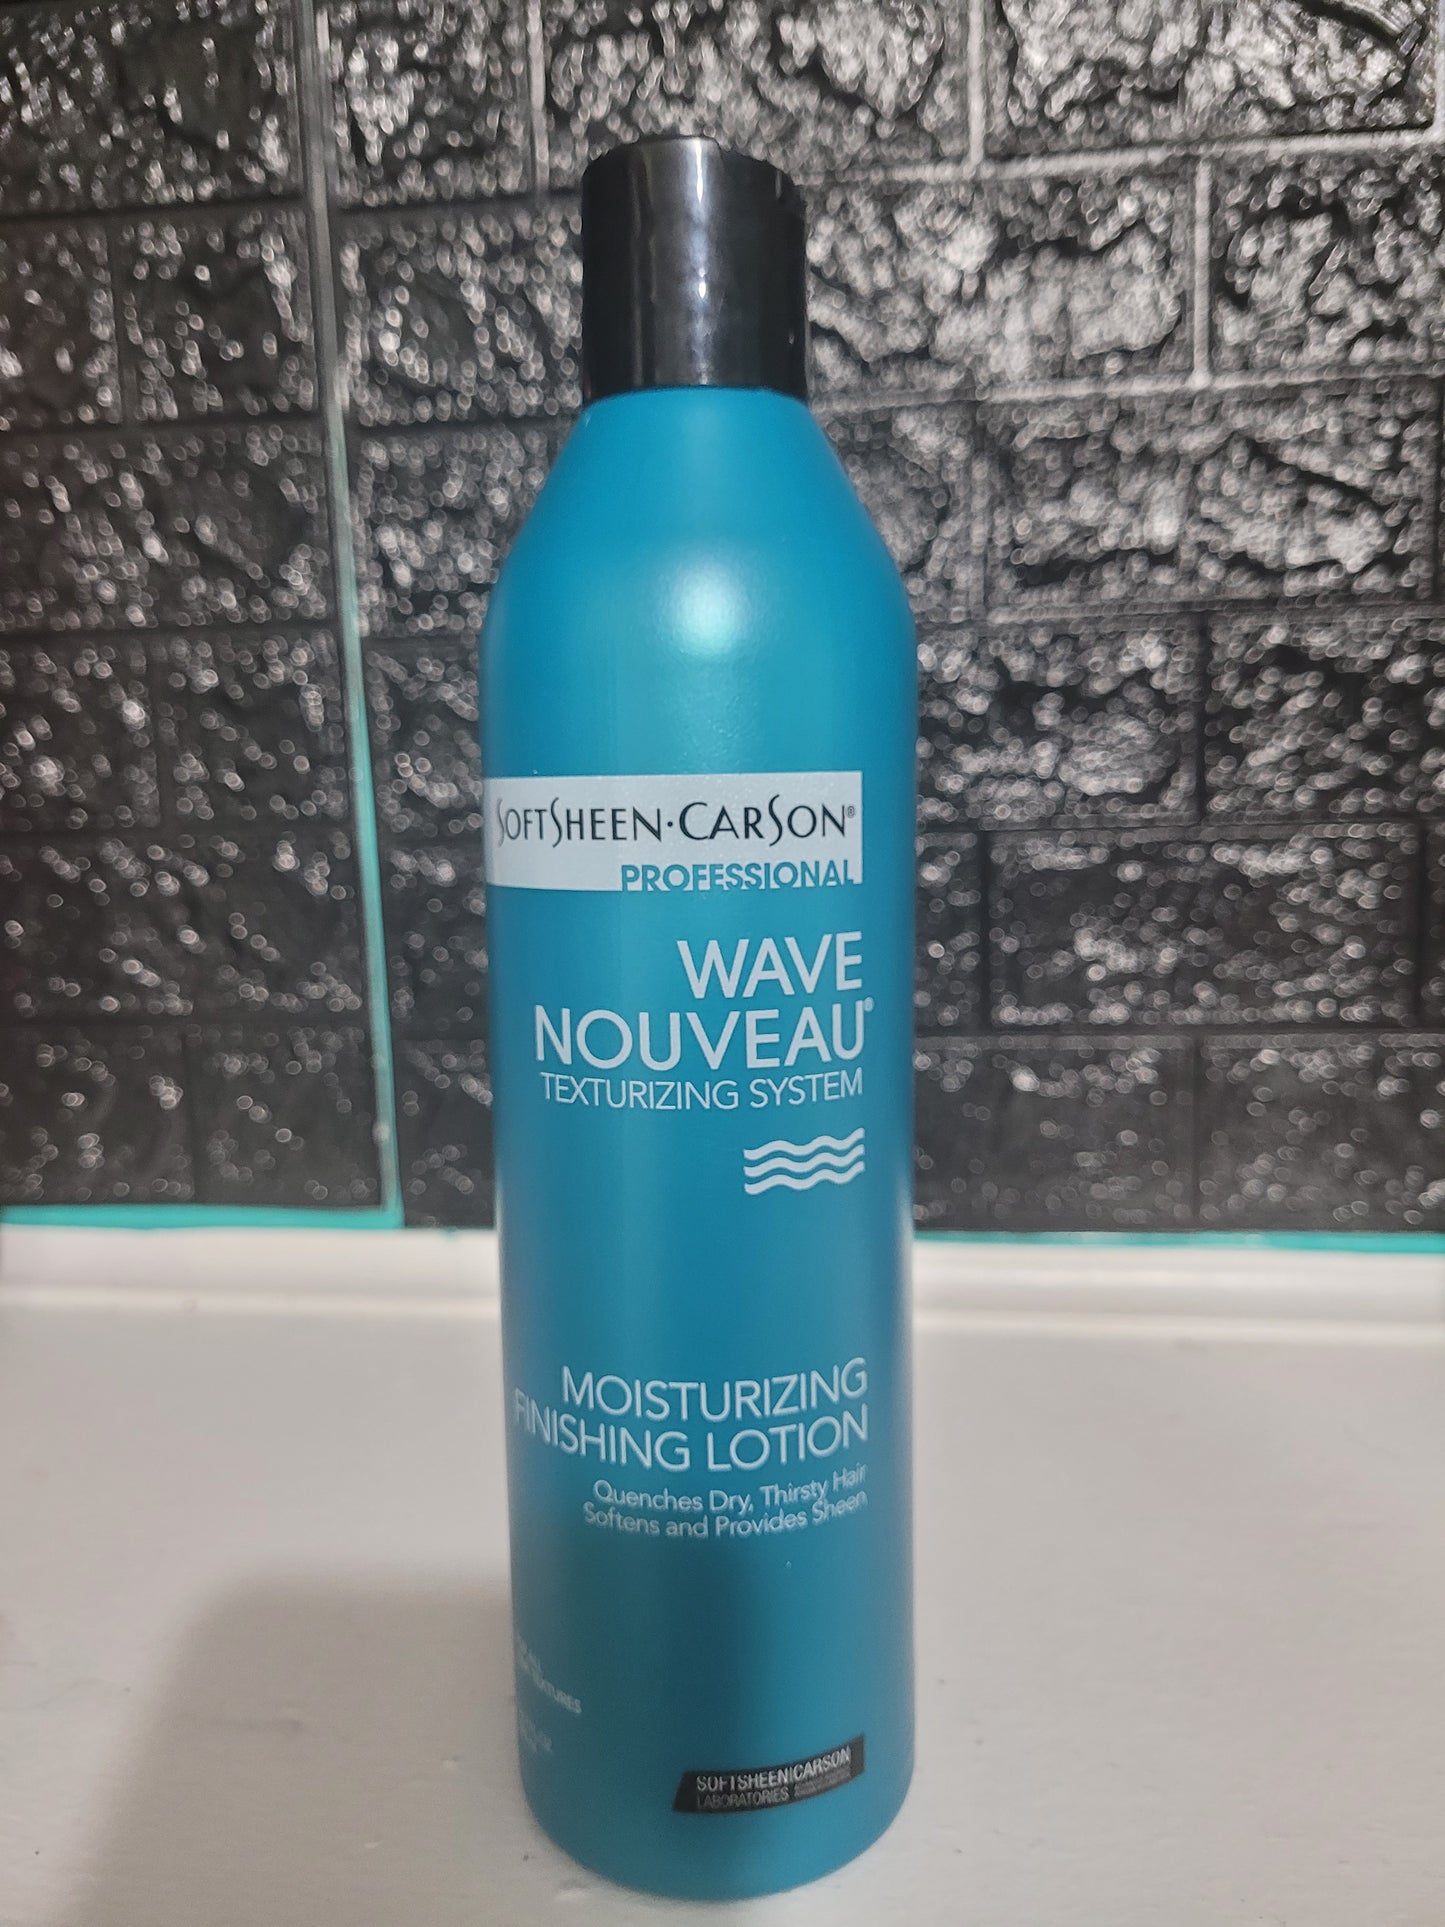 Wave Nouveau